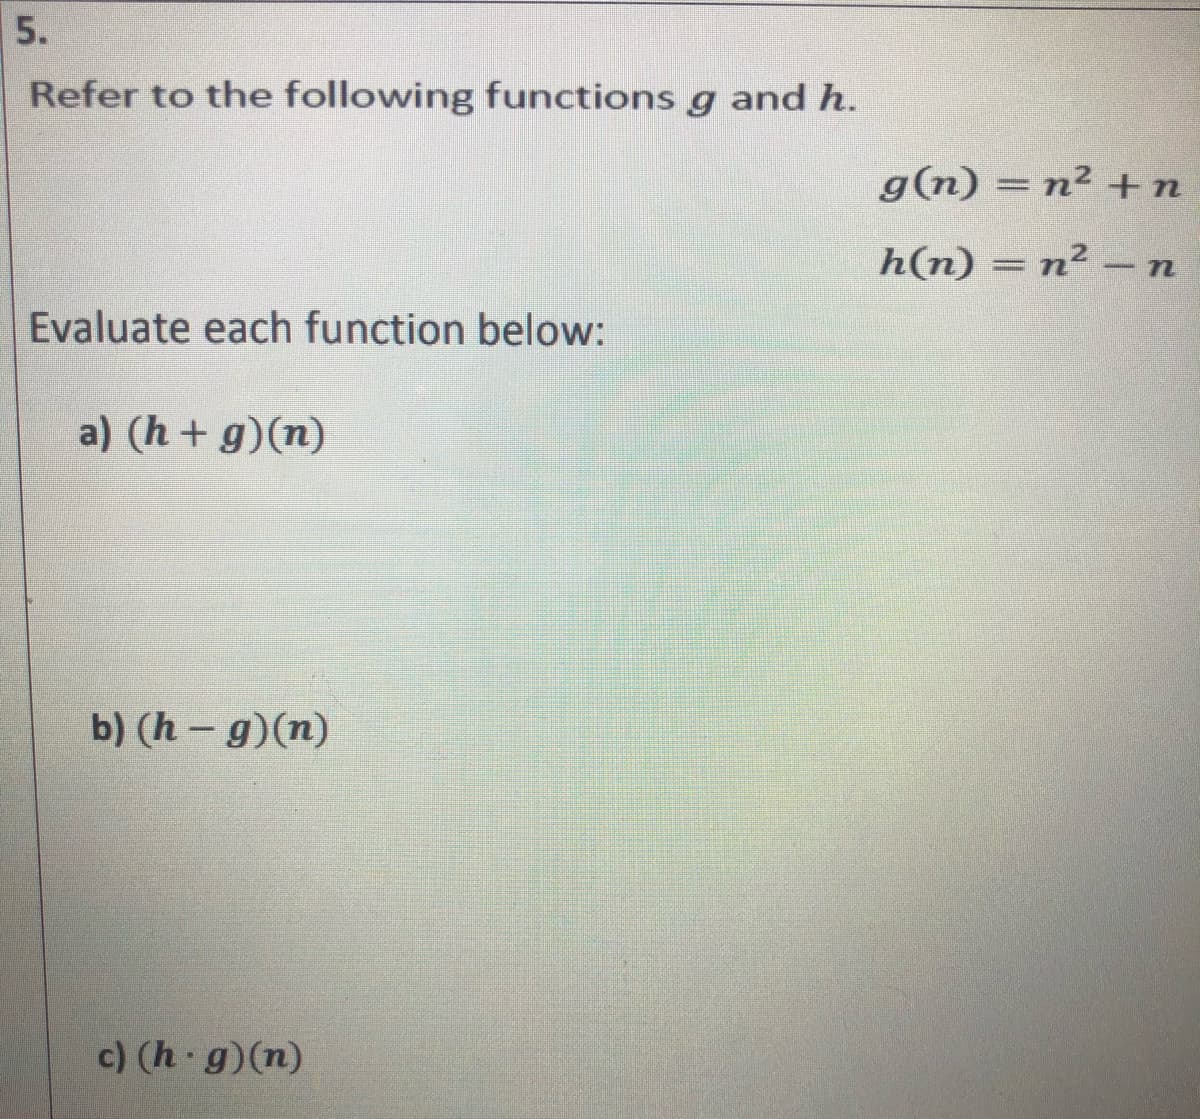 5.
Refer to the following functions g and h.
g(n) = n² +n
h(n) = n² -n
Evaluate each function below:
a) (h+g)(n)
b) (h - g)(n)
c) (h g)(n)
